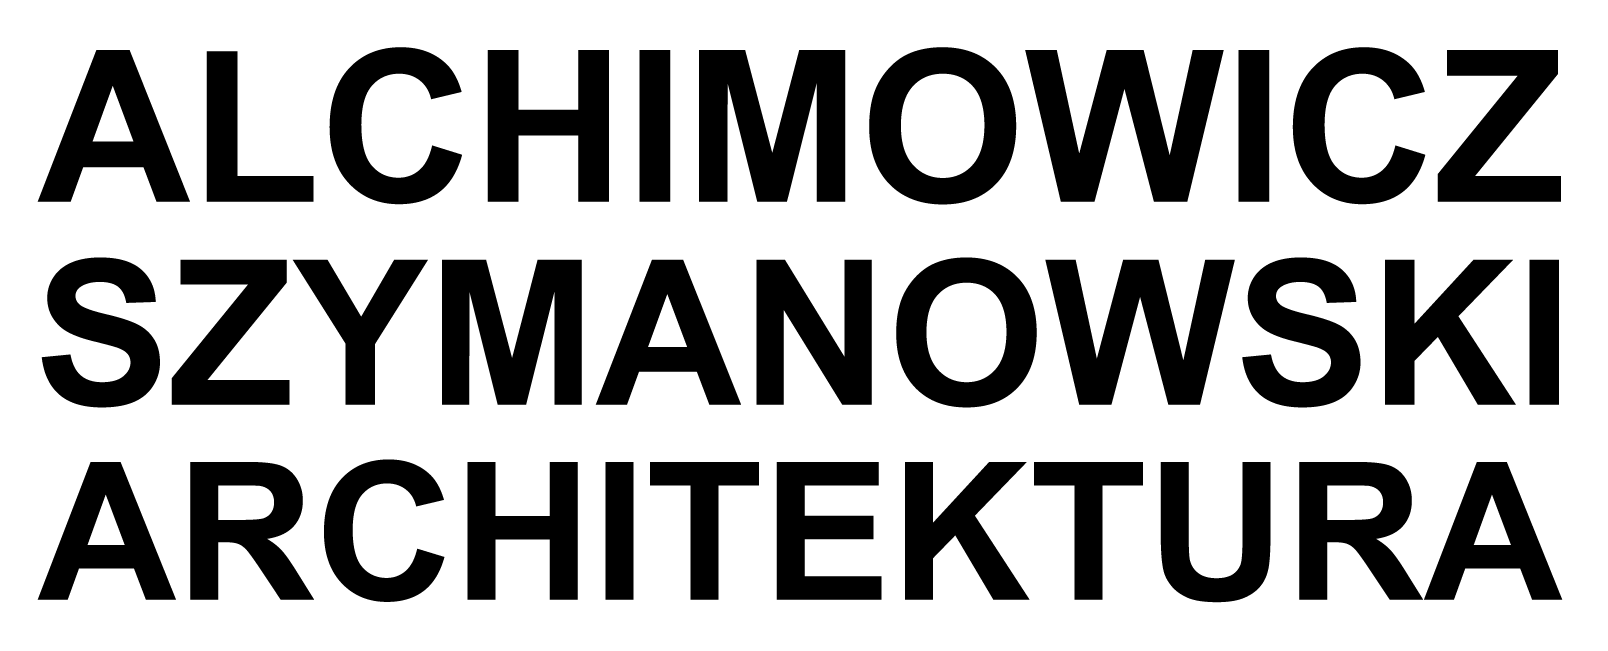 LOGO-ALCHIMOWICZ-SZYMANOWSKI-ARCH-Model1